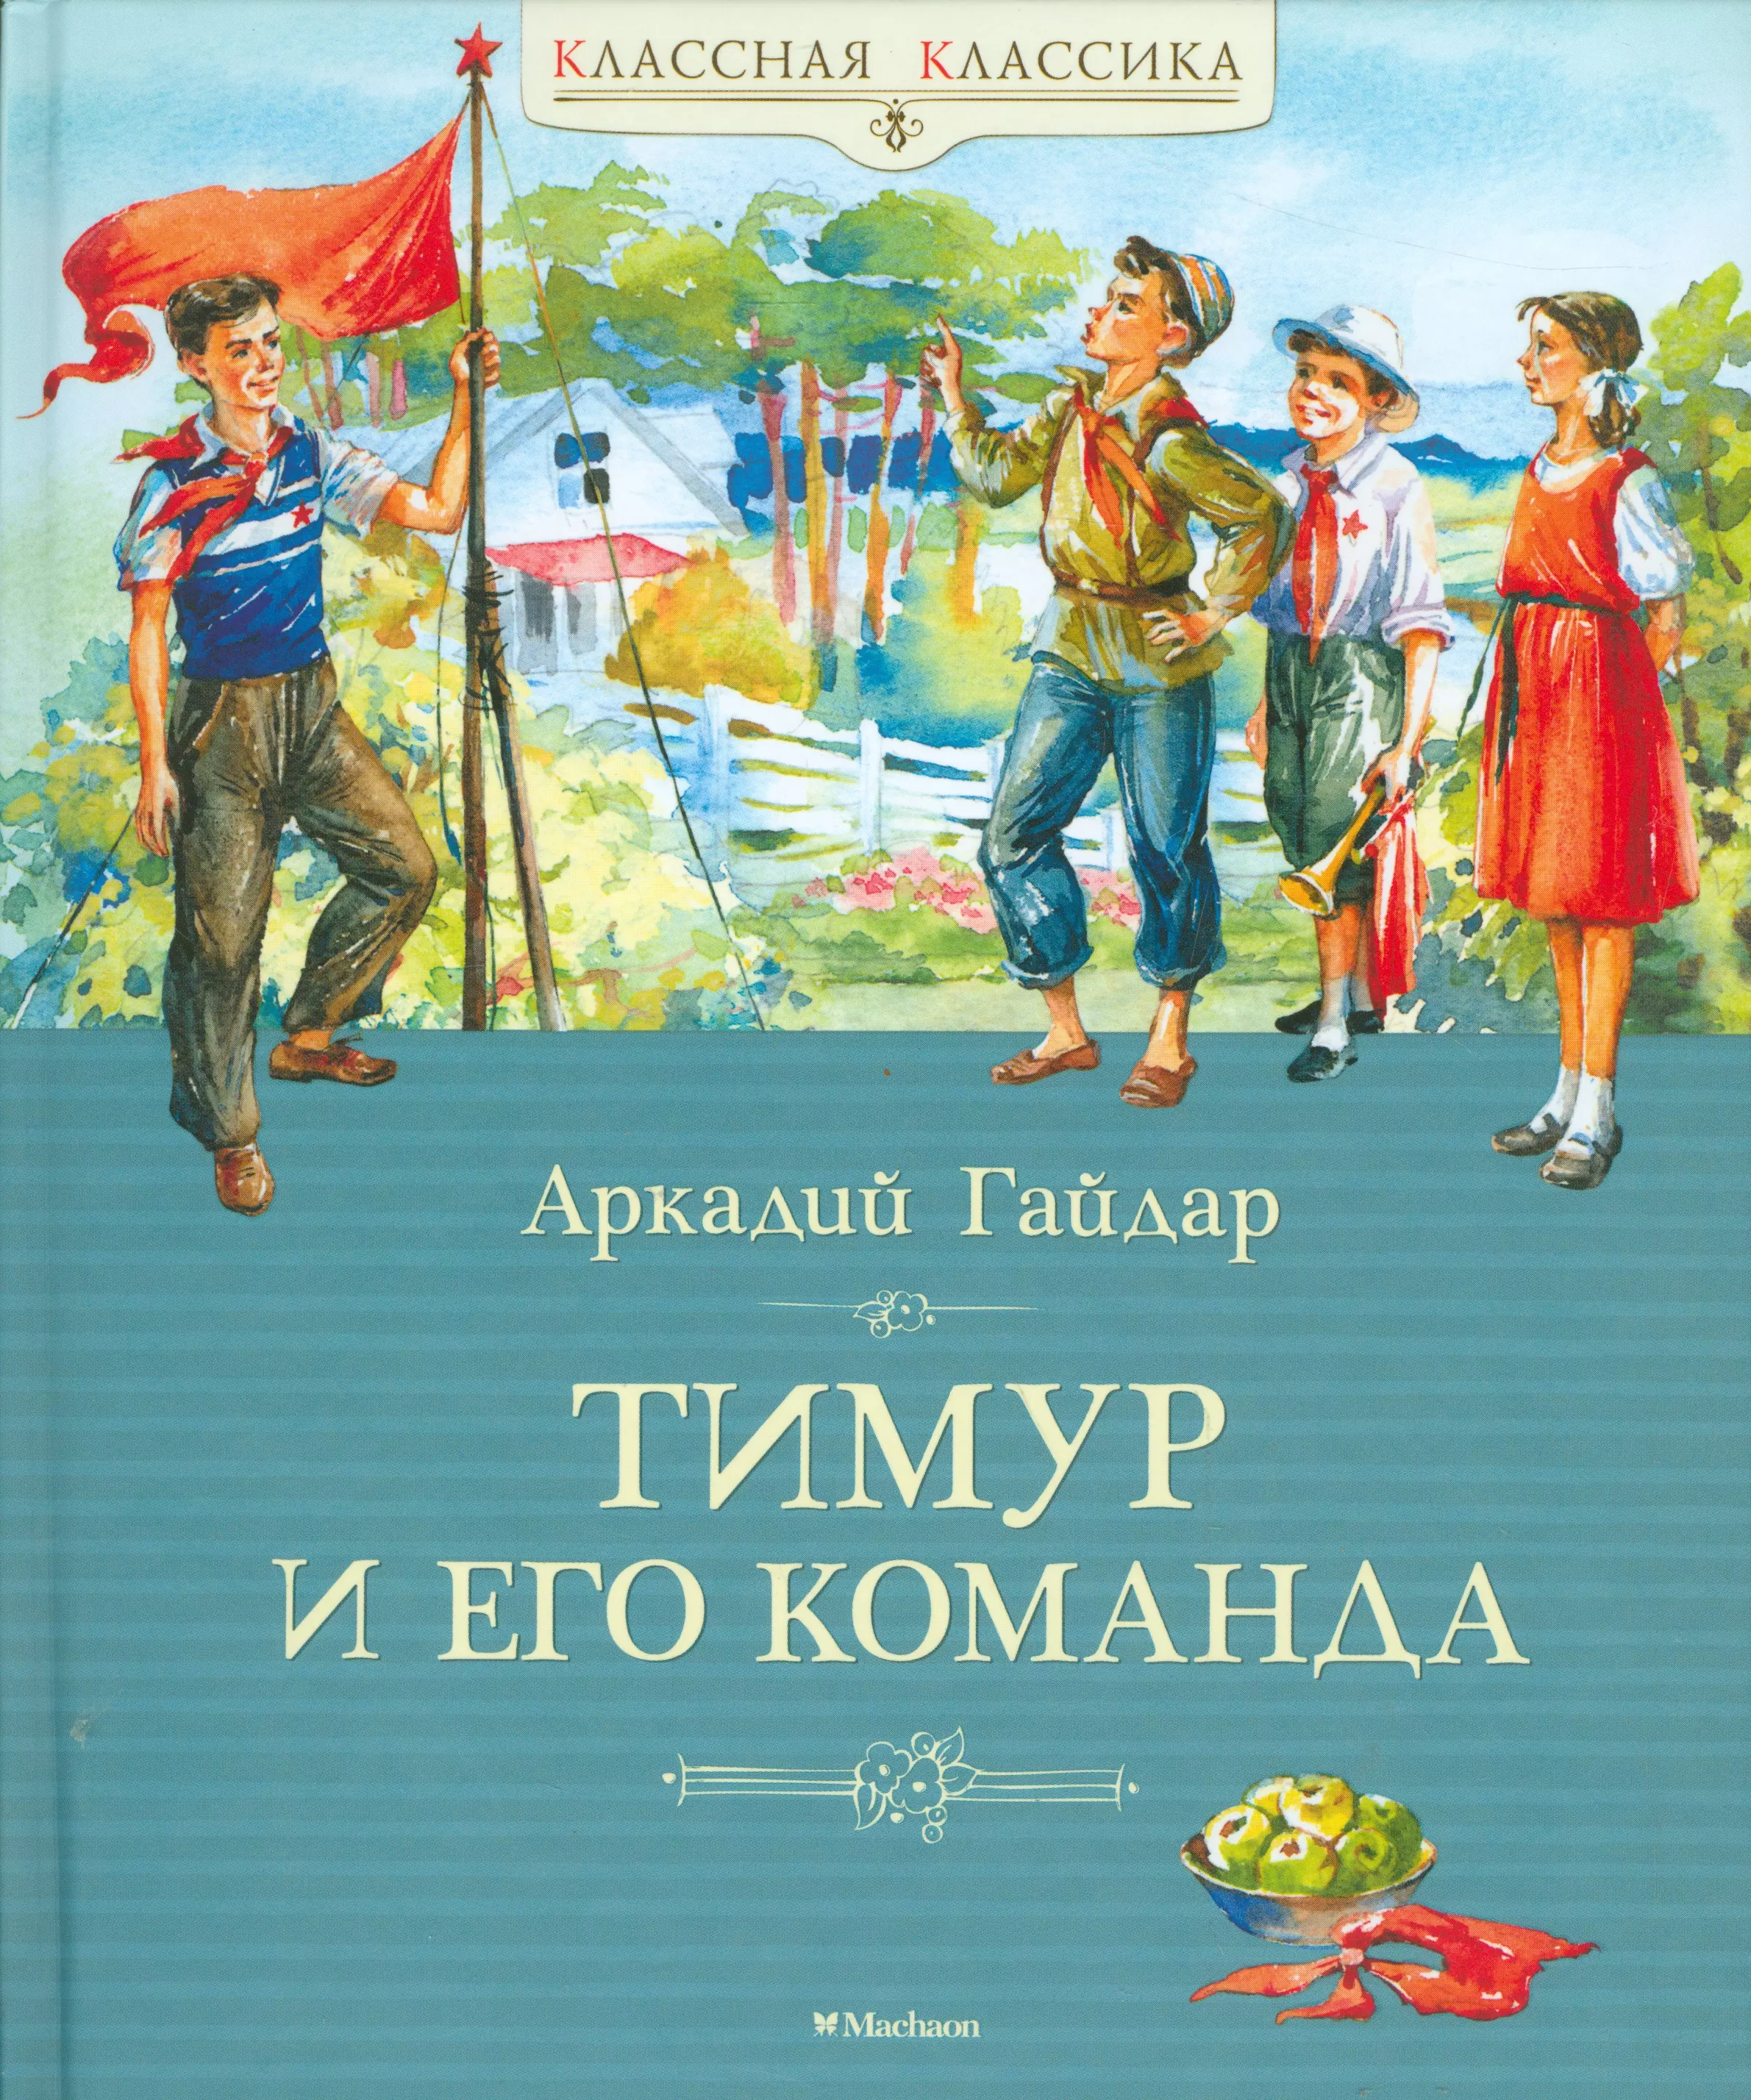 Аркадия Гайдара «Тимур и его команда» 1940